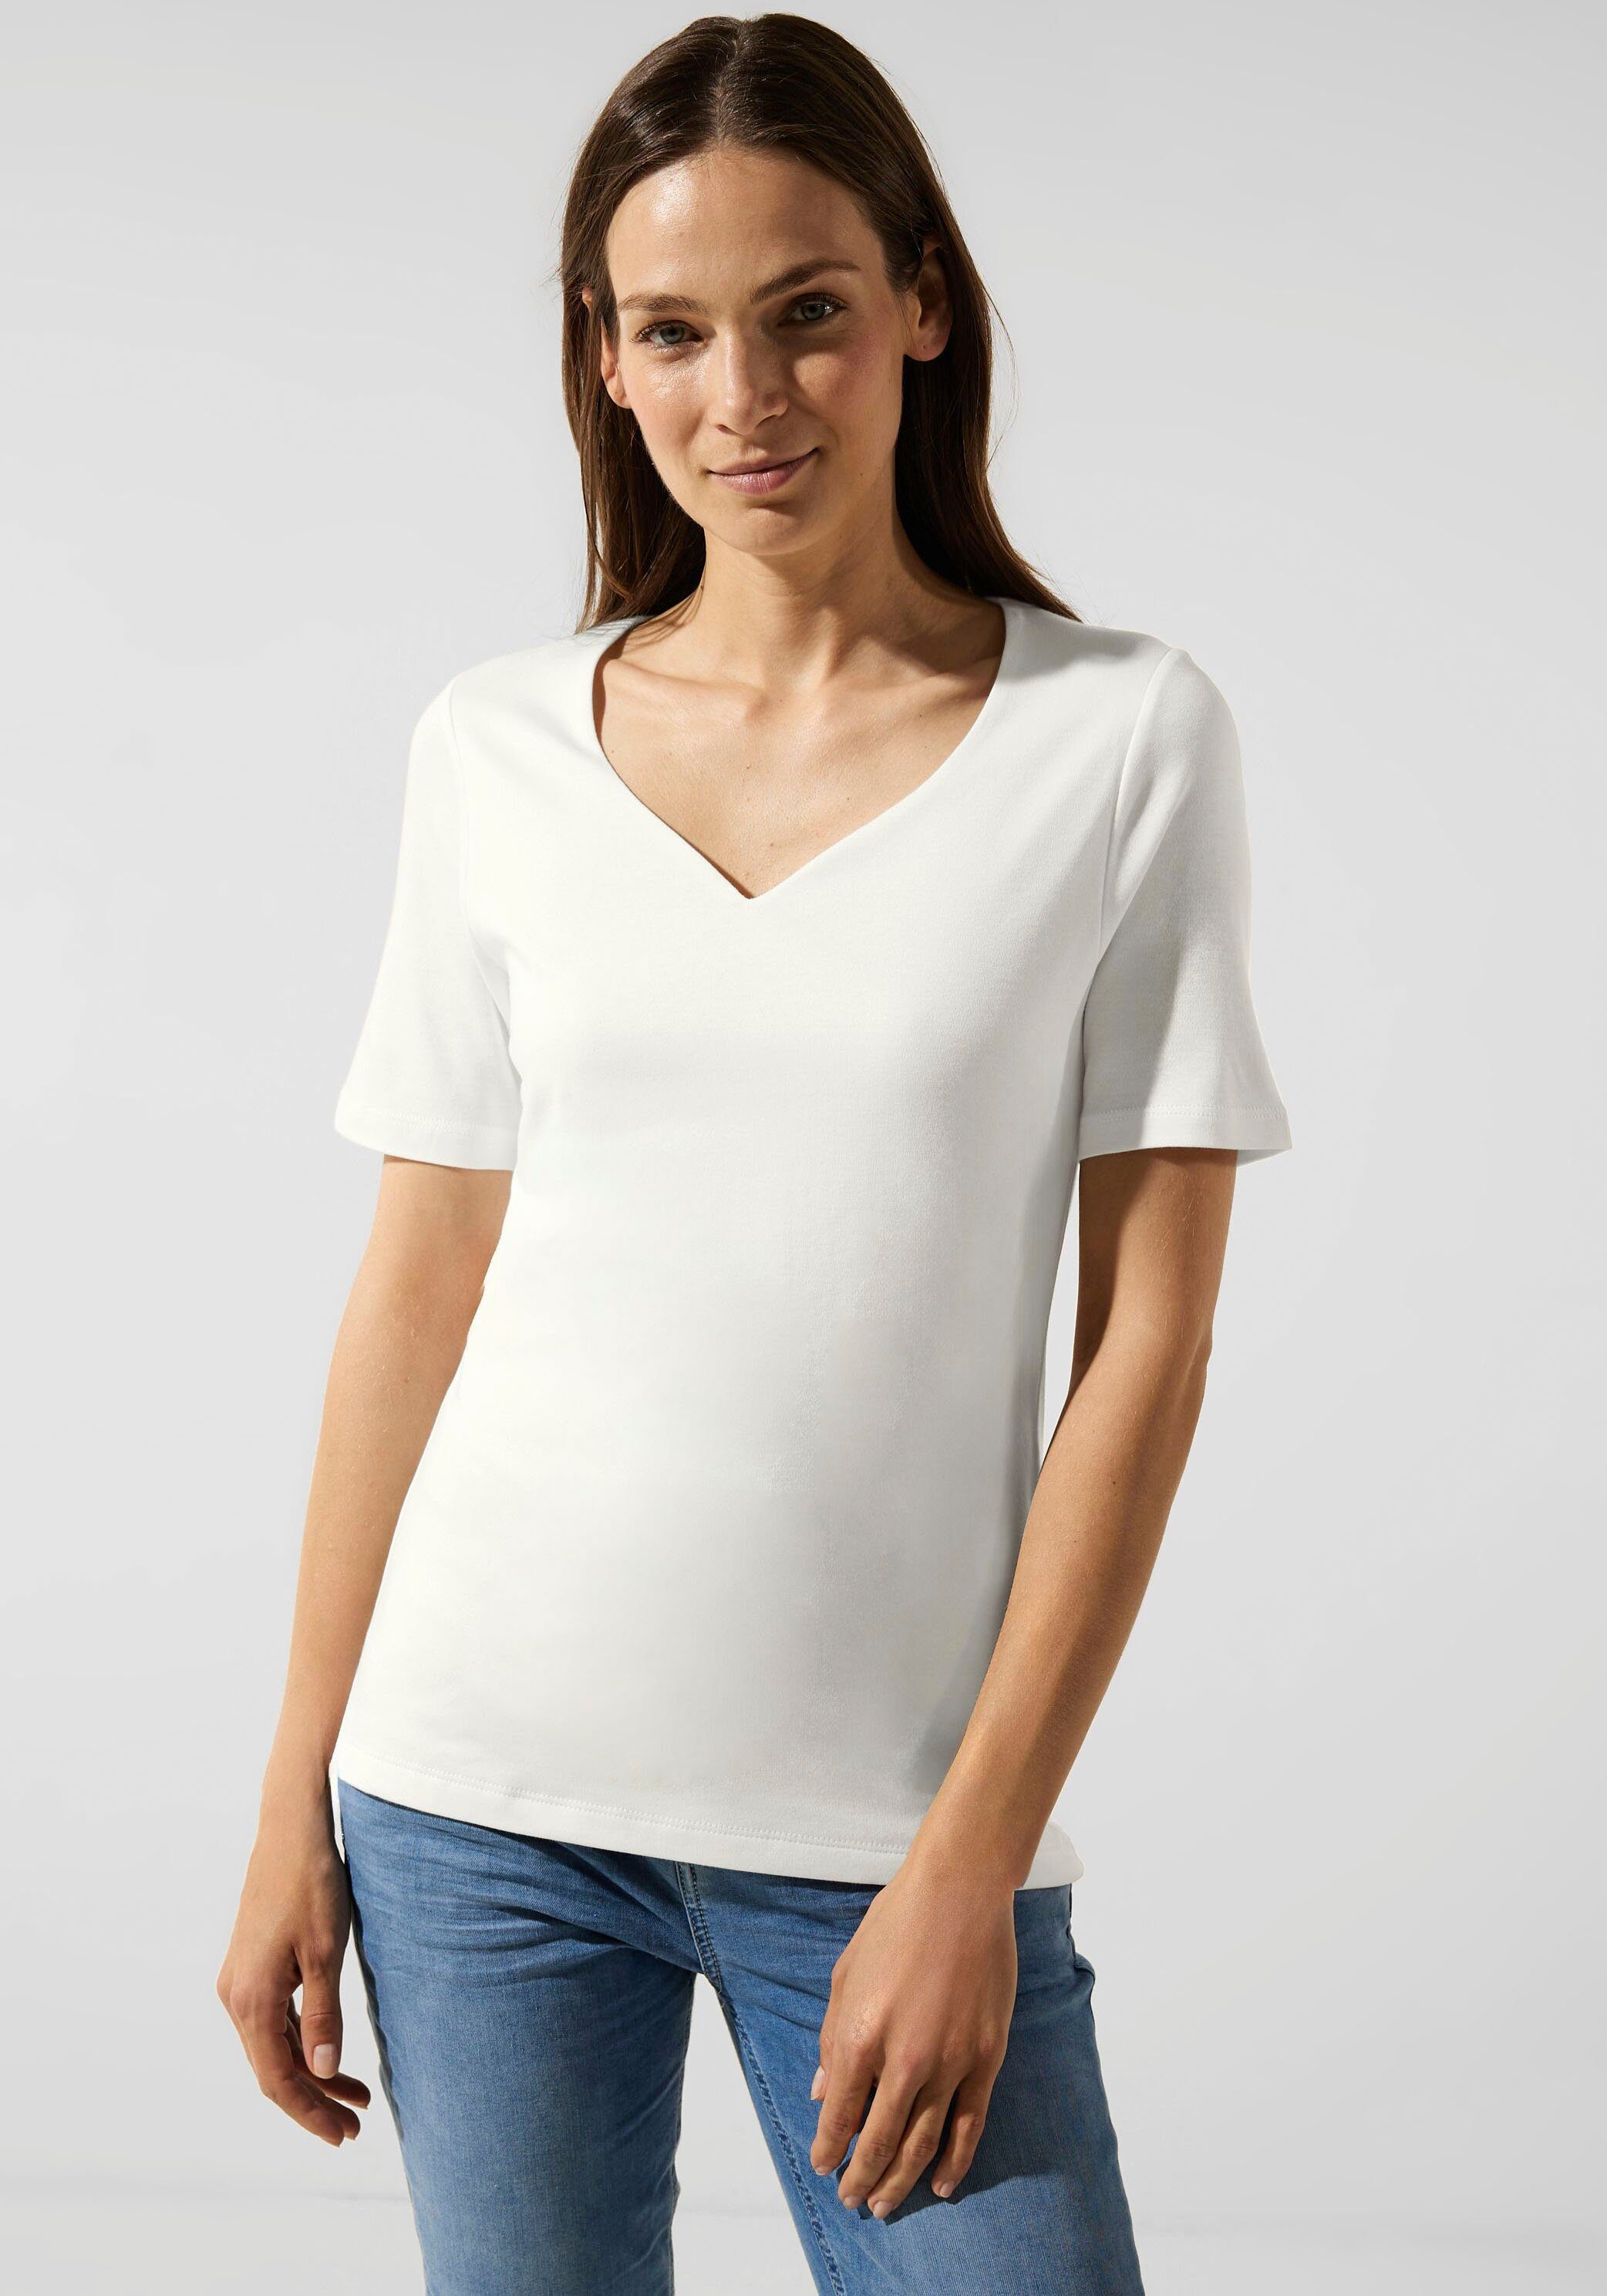 white Herz-Ausschnitt STREET T-Shirt mit ONE off